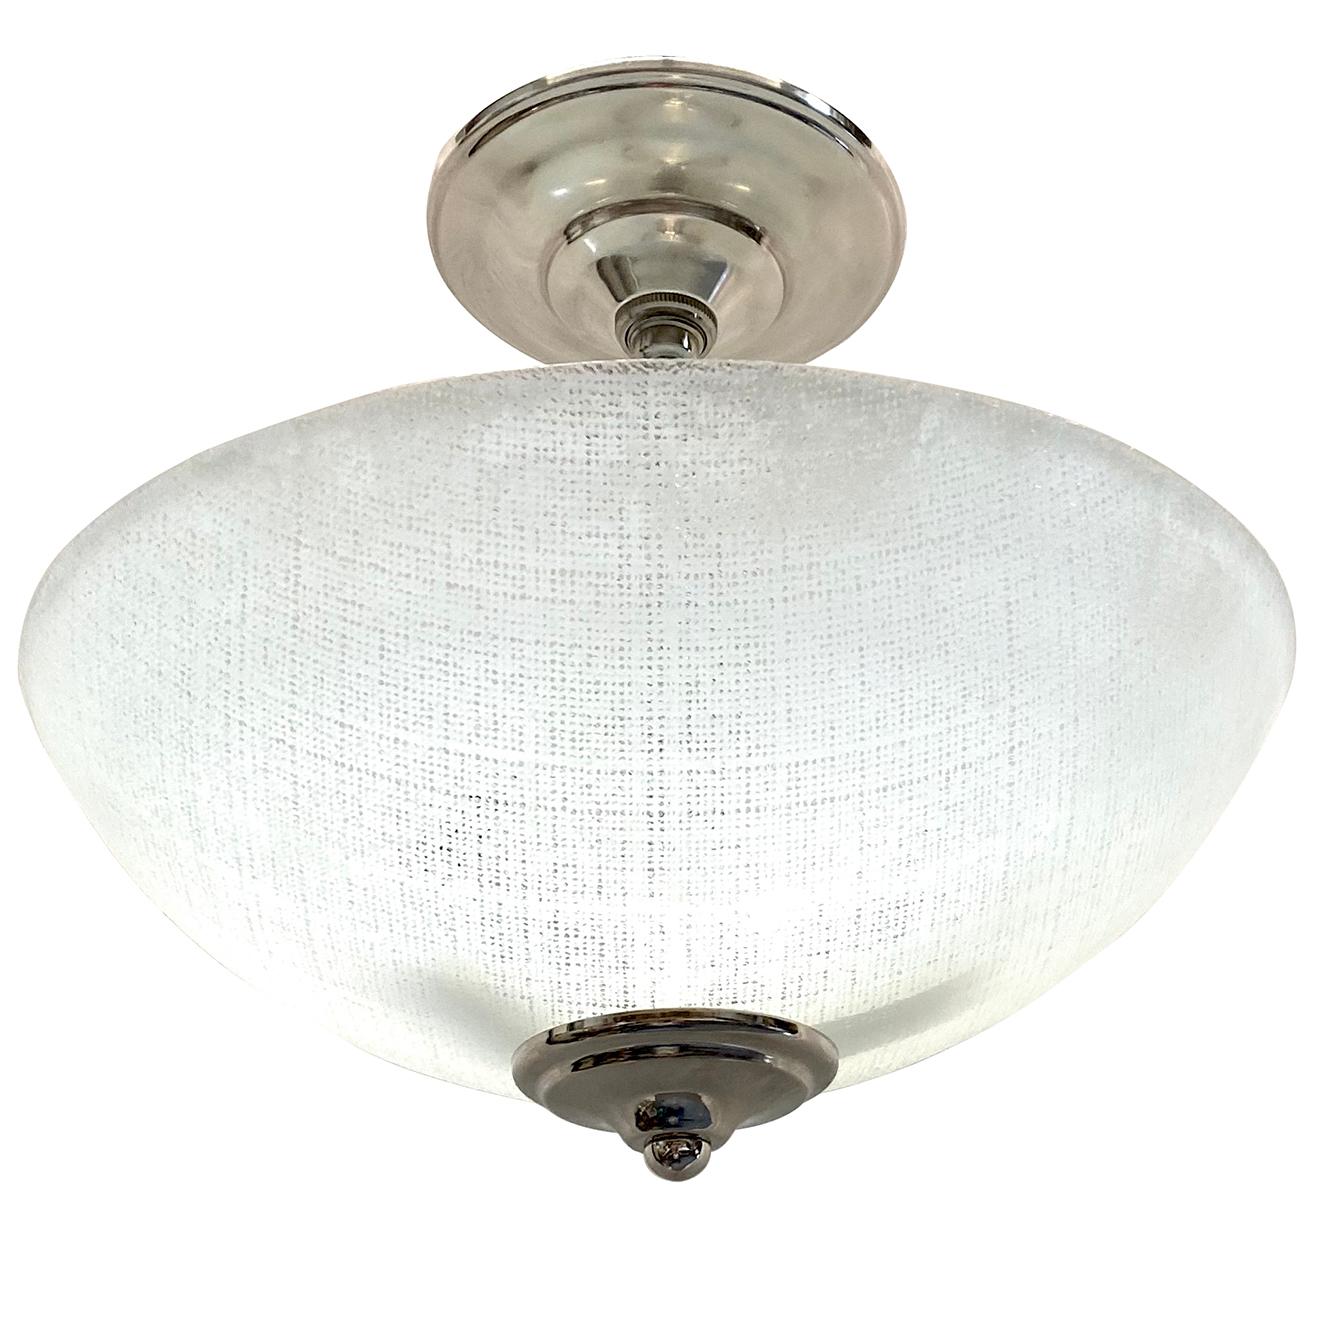 Paire de luminaires italiens en verre moulé des années 1950 avec trois lumières intérieures. Vendu à l'unité.

Mesures :
Diamètre 12.5